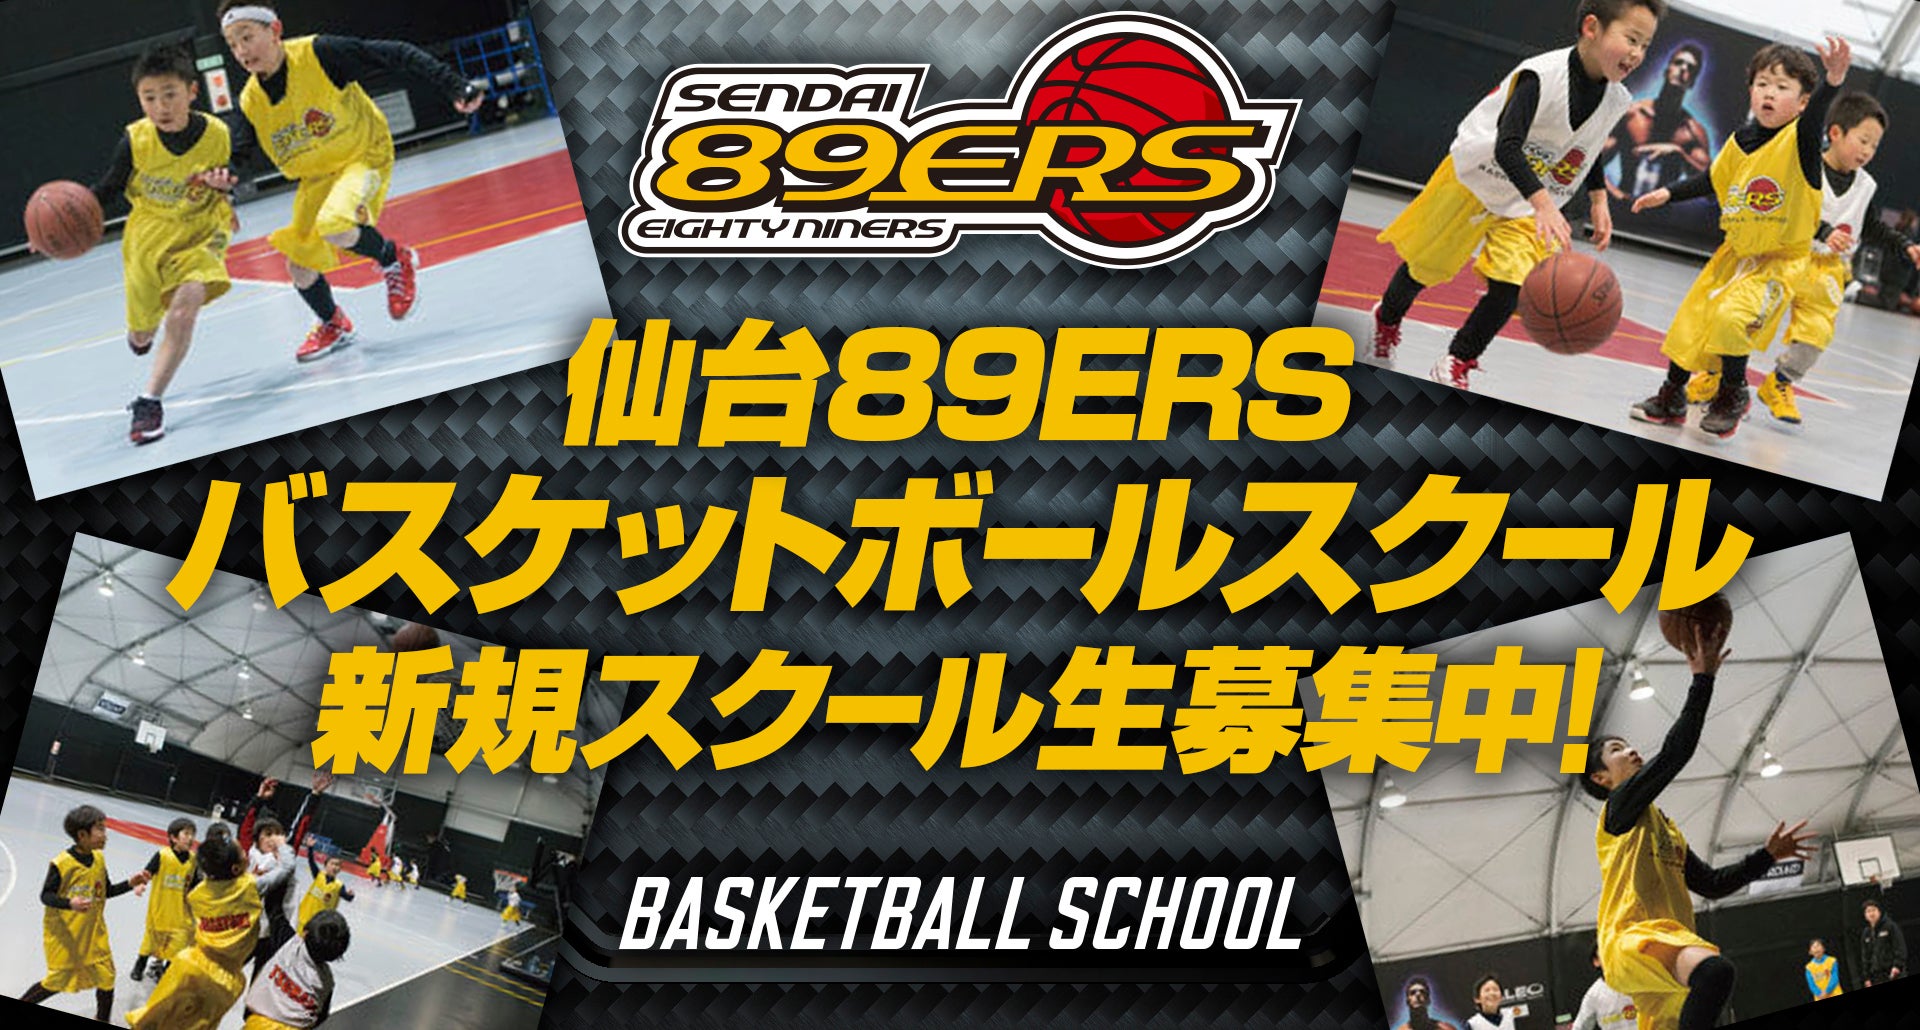 仙台89ersバスケットボールスクール 仙台89ers